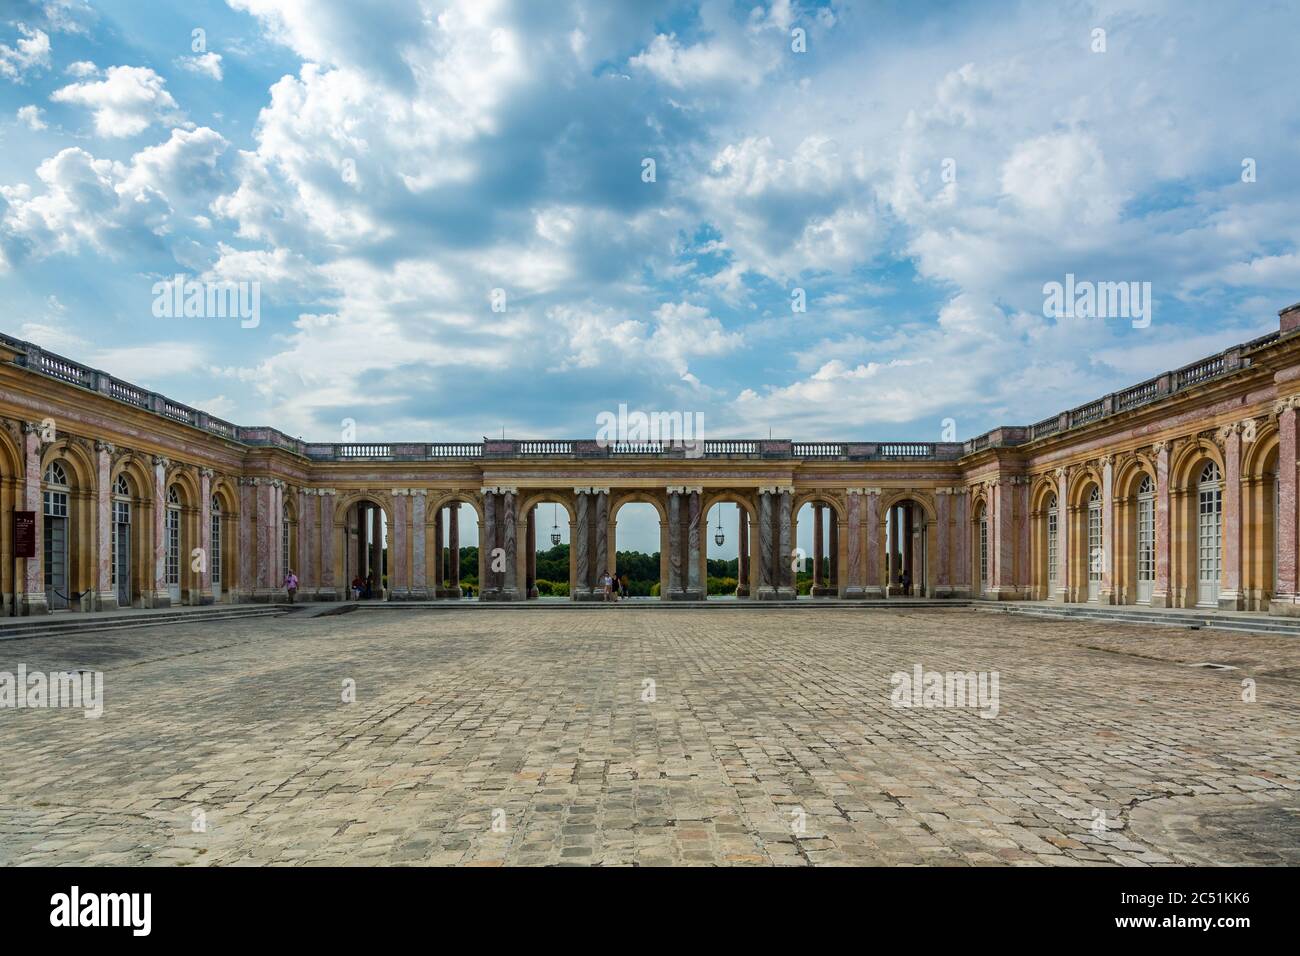 Versailles, Francia - 27 agosto 2019 : splendida vista panoramica del cortile in ciottoli e del colonnato riparato che collega le due ali del Th Foto Stock